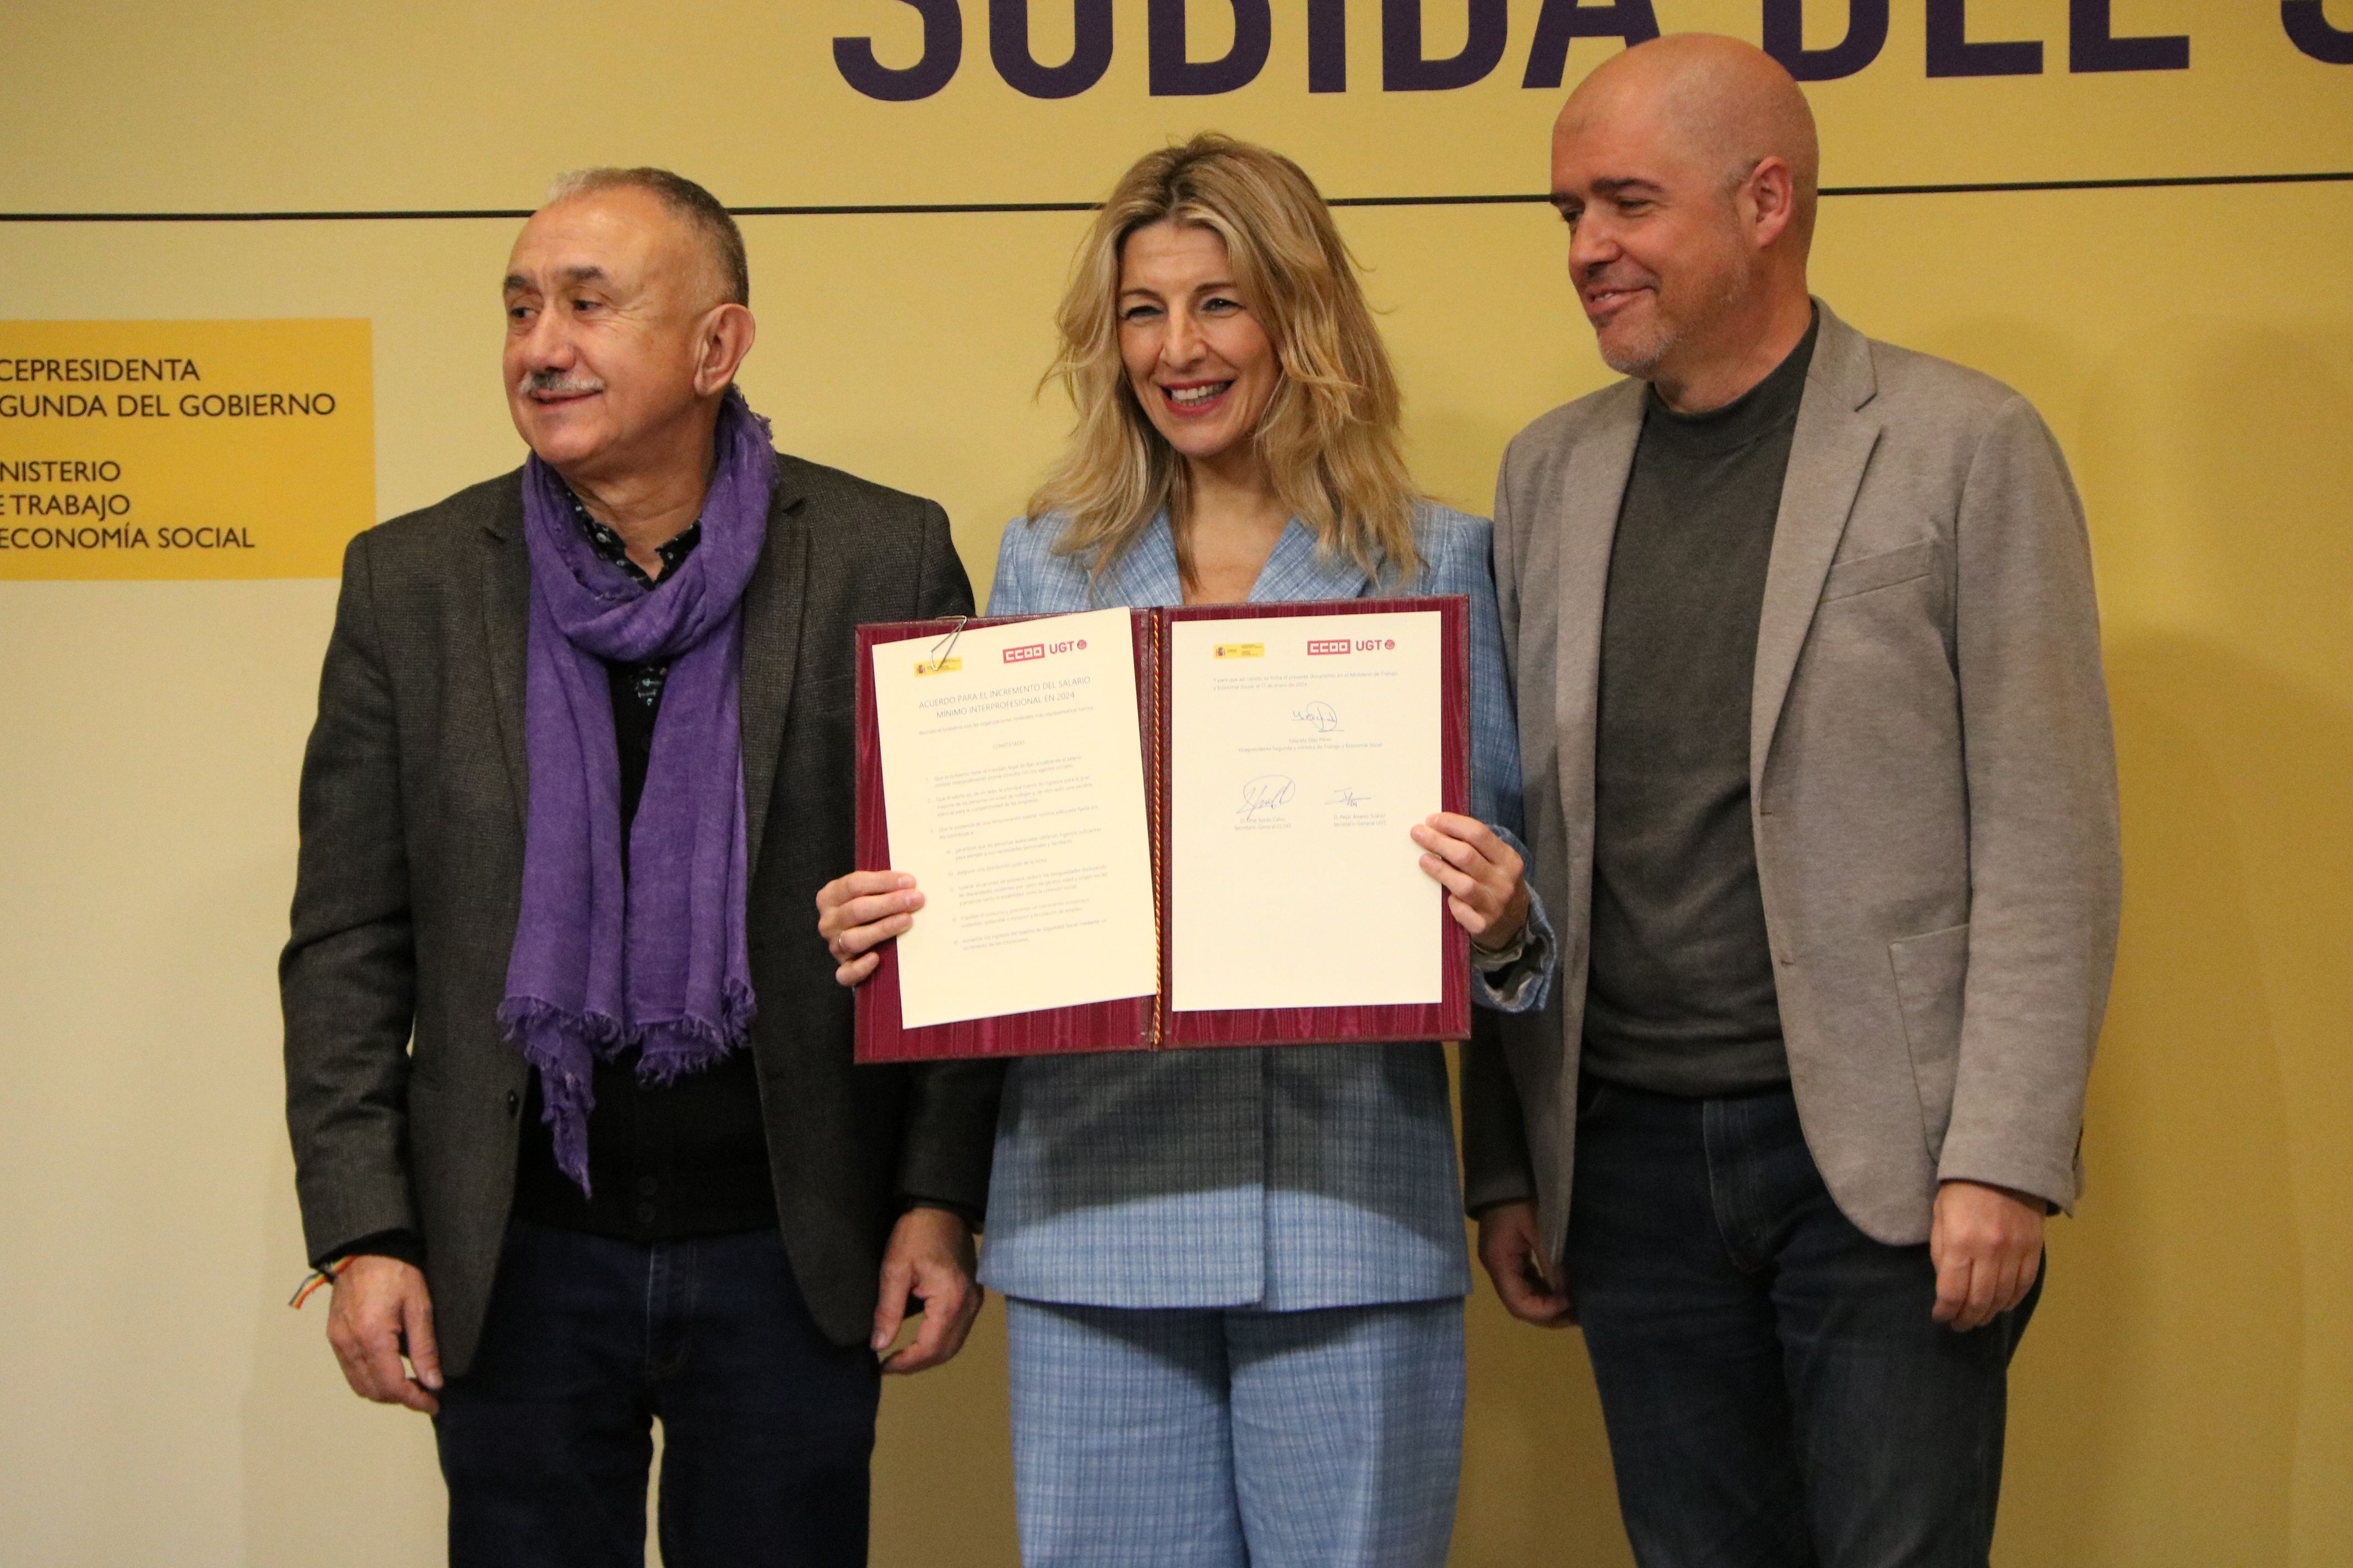 Yolanda Díaz amb Unai Sordo i Pepe Álvarez